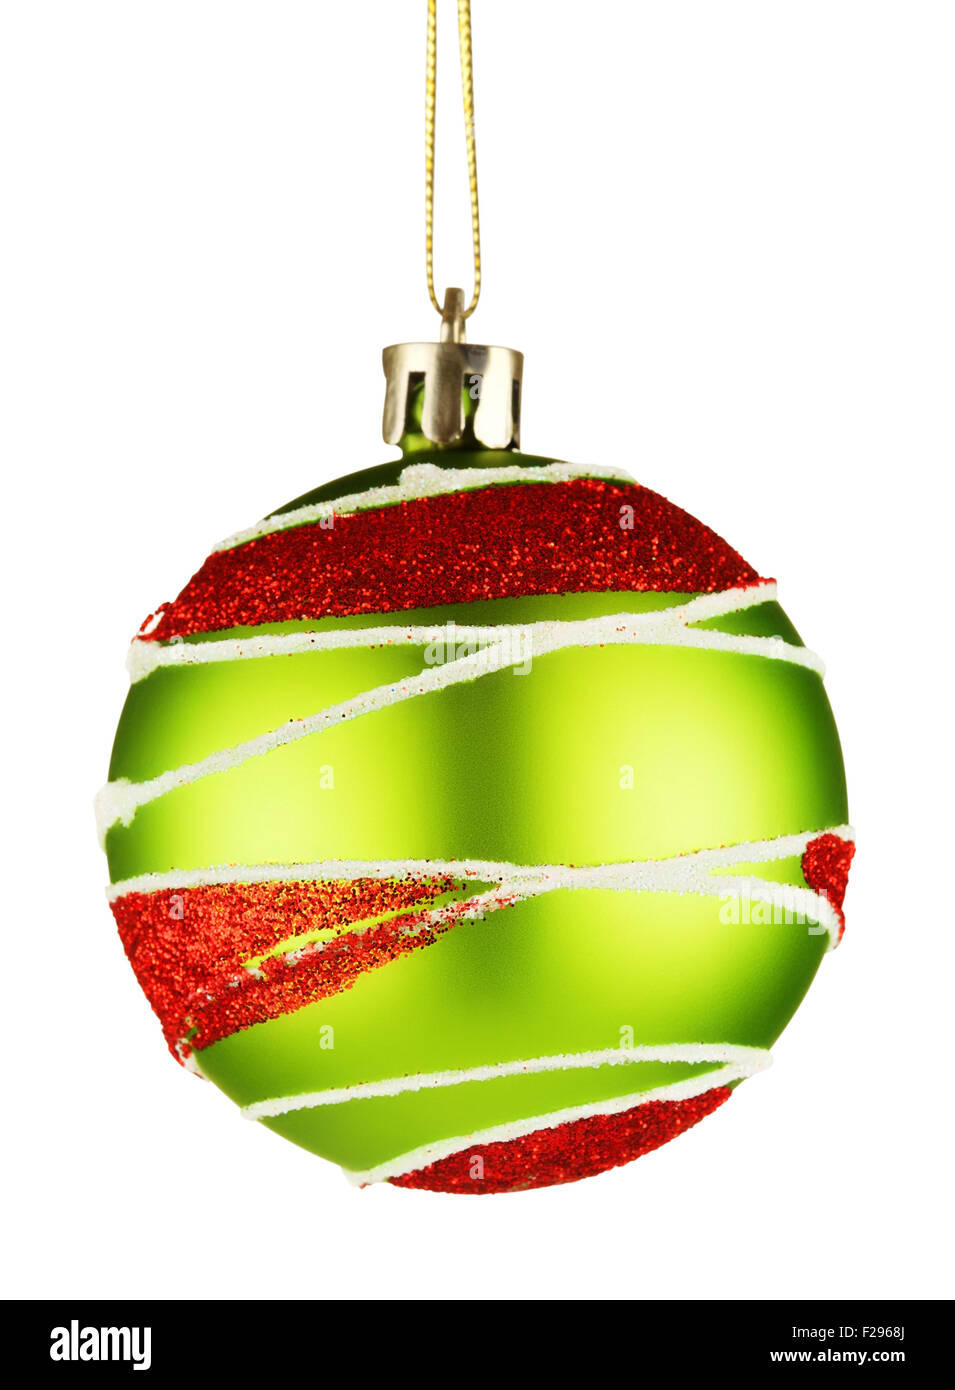 Ornement ball pour arbre de Noël, isolé sur fond blanc Banque D'Images